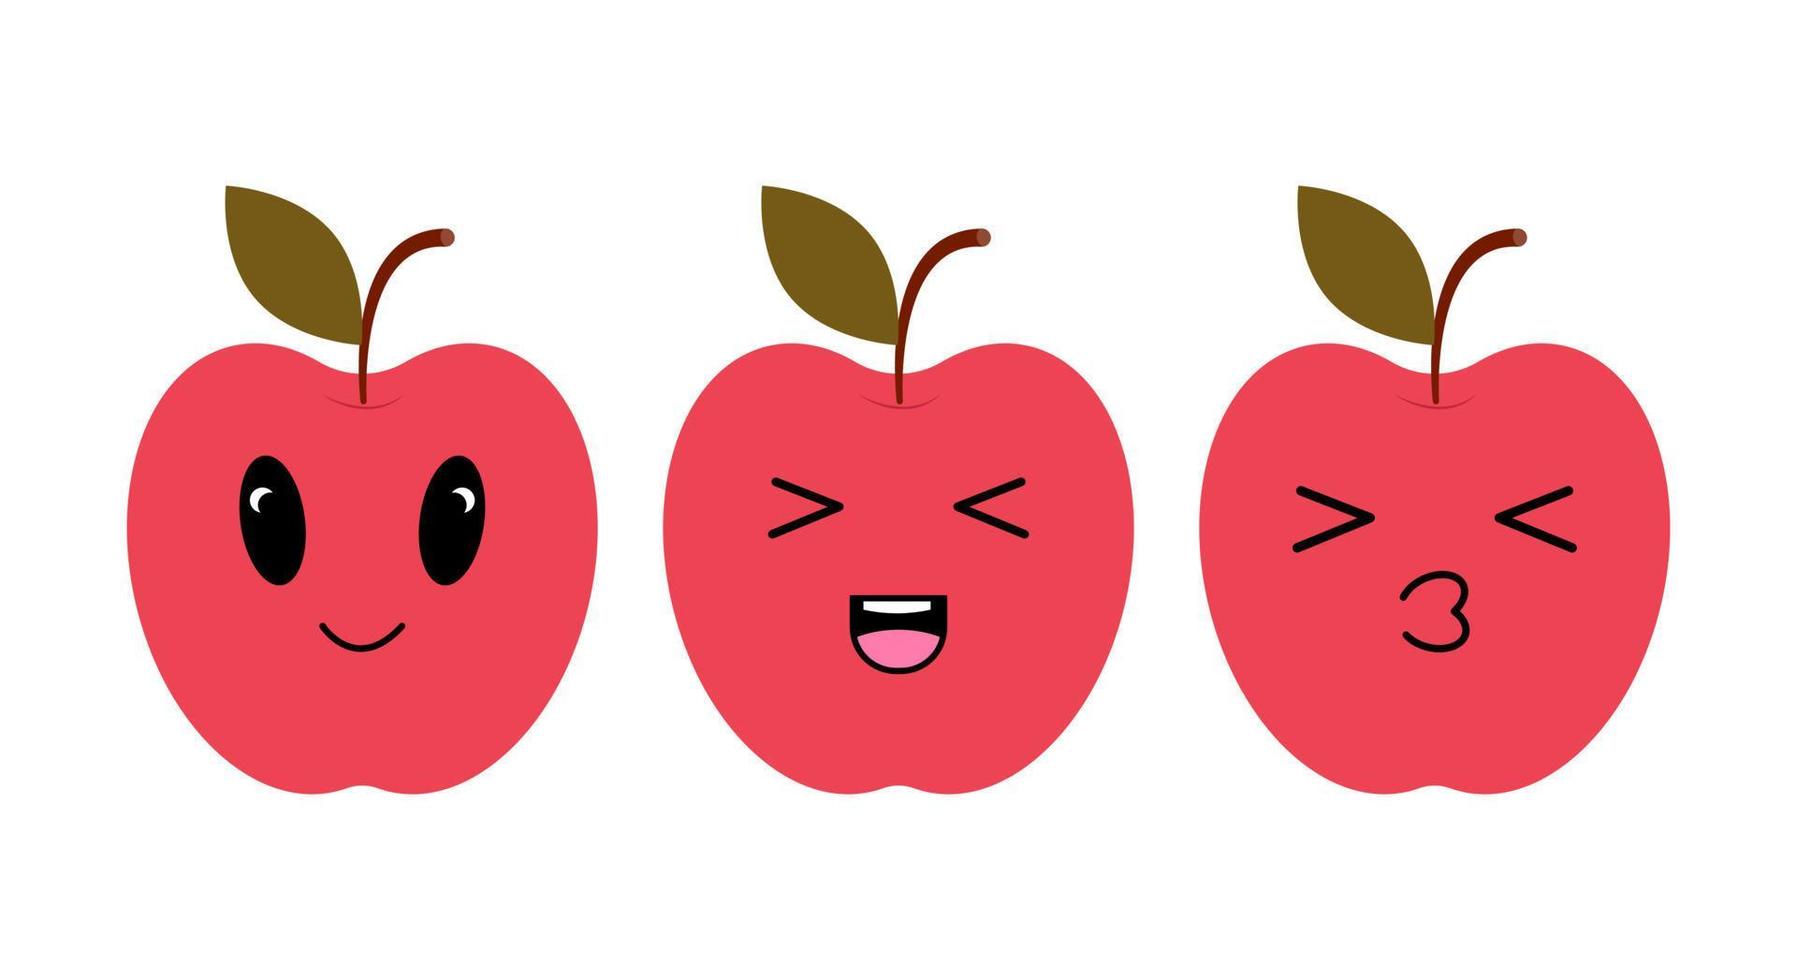 röd äpple med söt ögon. platt design vektor illustration av röd äpple